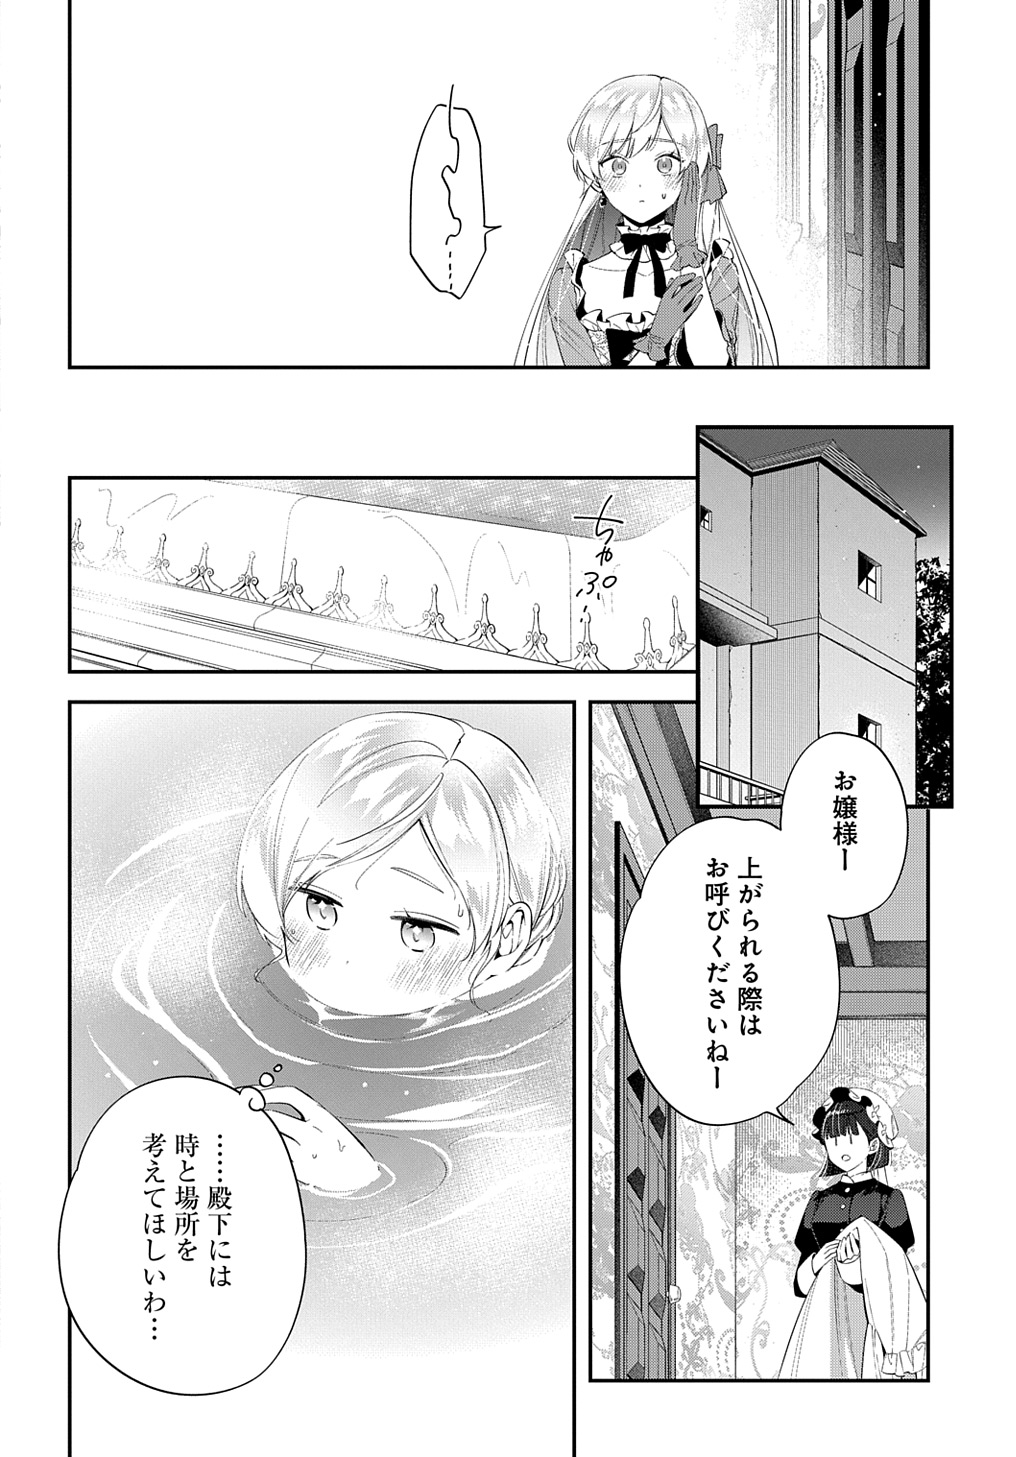 Outaishi ni Konyaku Hakisareta no de, Mou Baka no Furi wa Yameyou to Omoimasu - Chapter 23 - Page 18